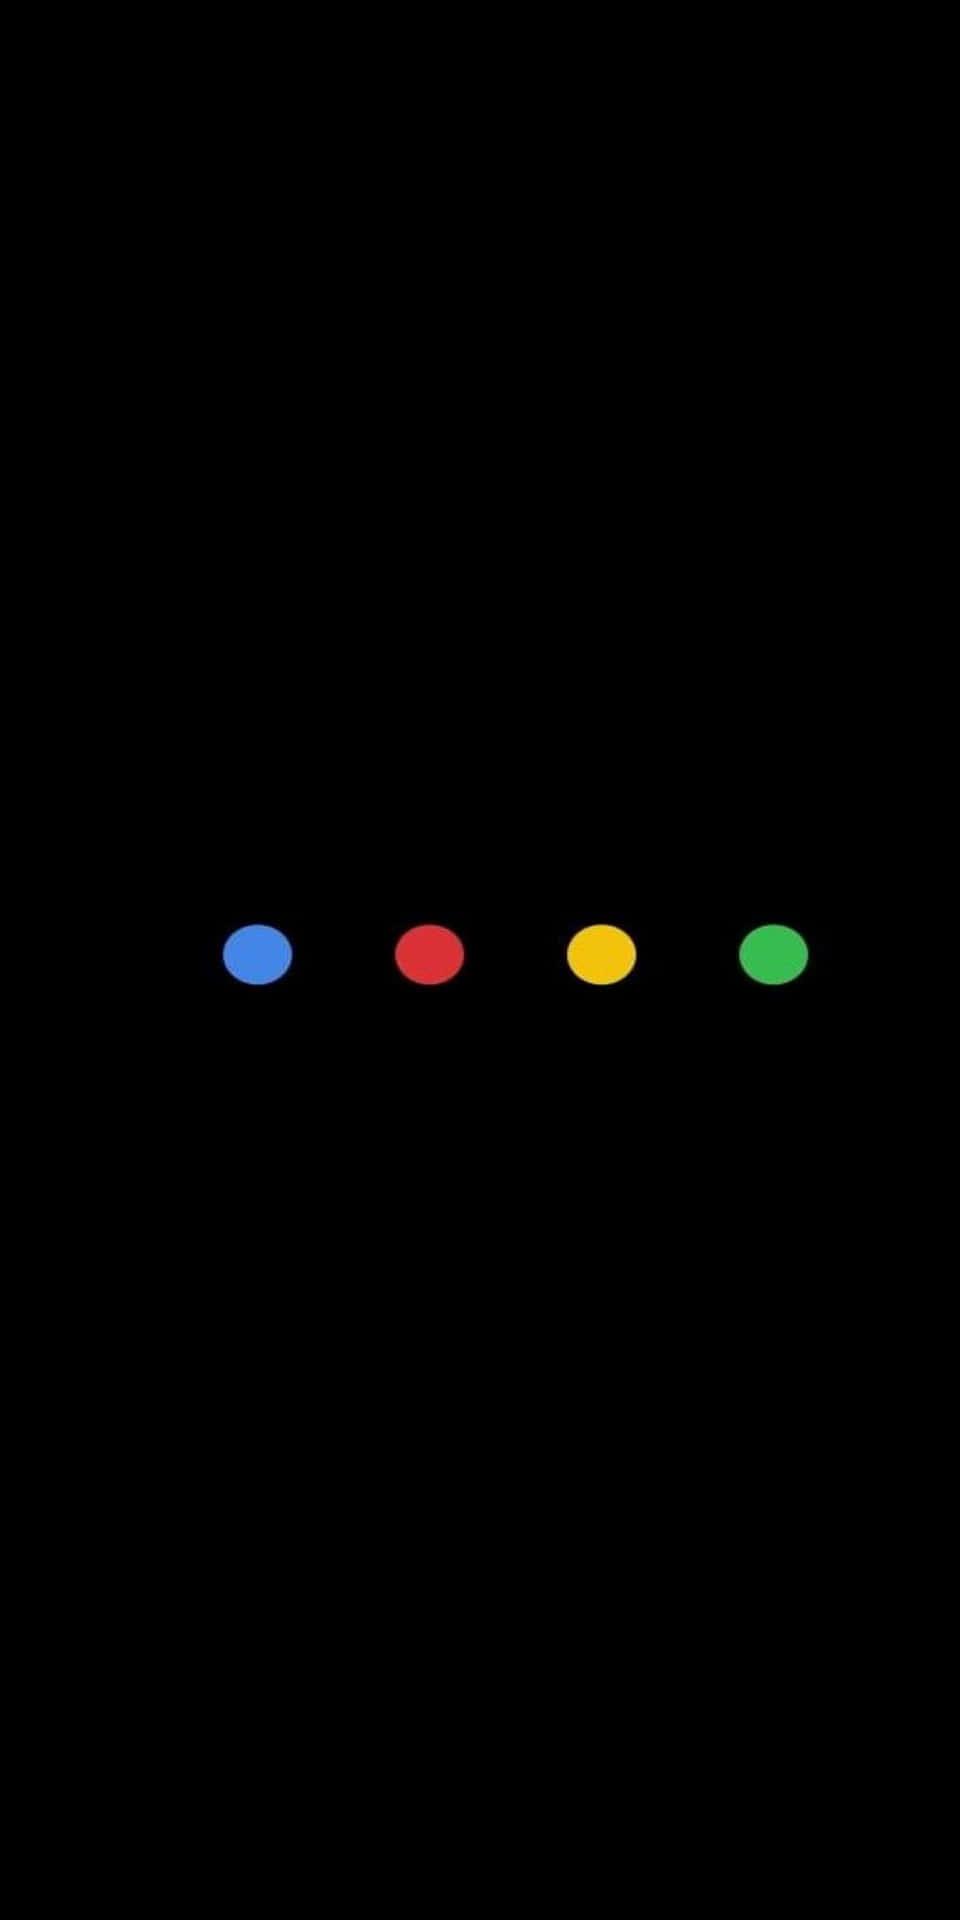 Googlefarbpunkte Pixel 3 Amoled Hintergrund